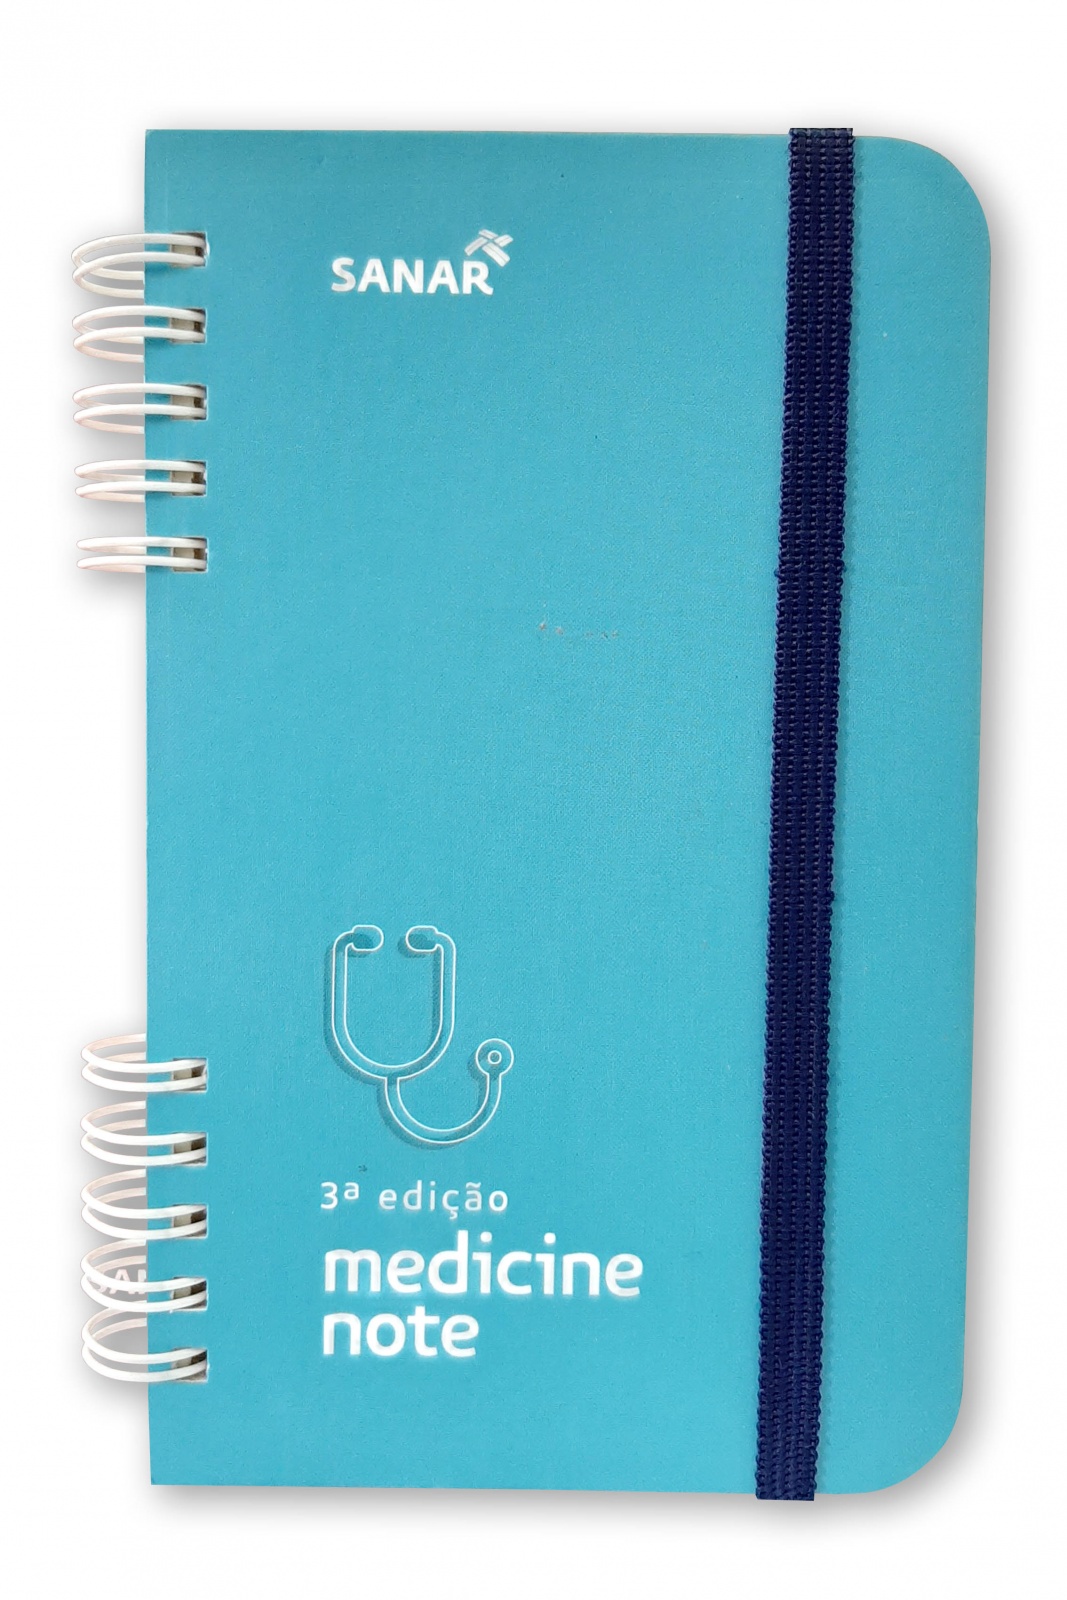 Sanar Medicine Note 3ª Edição